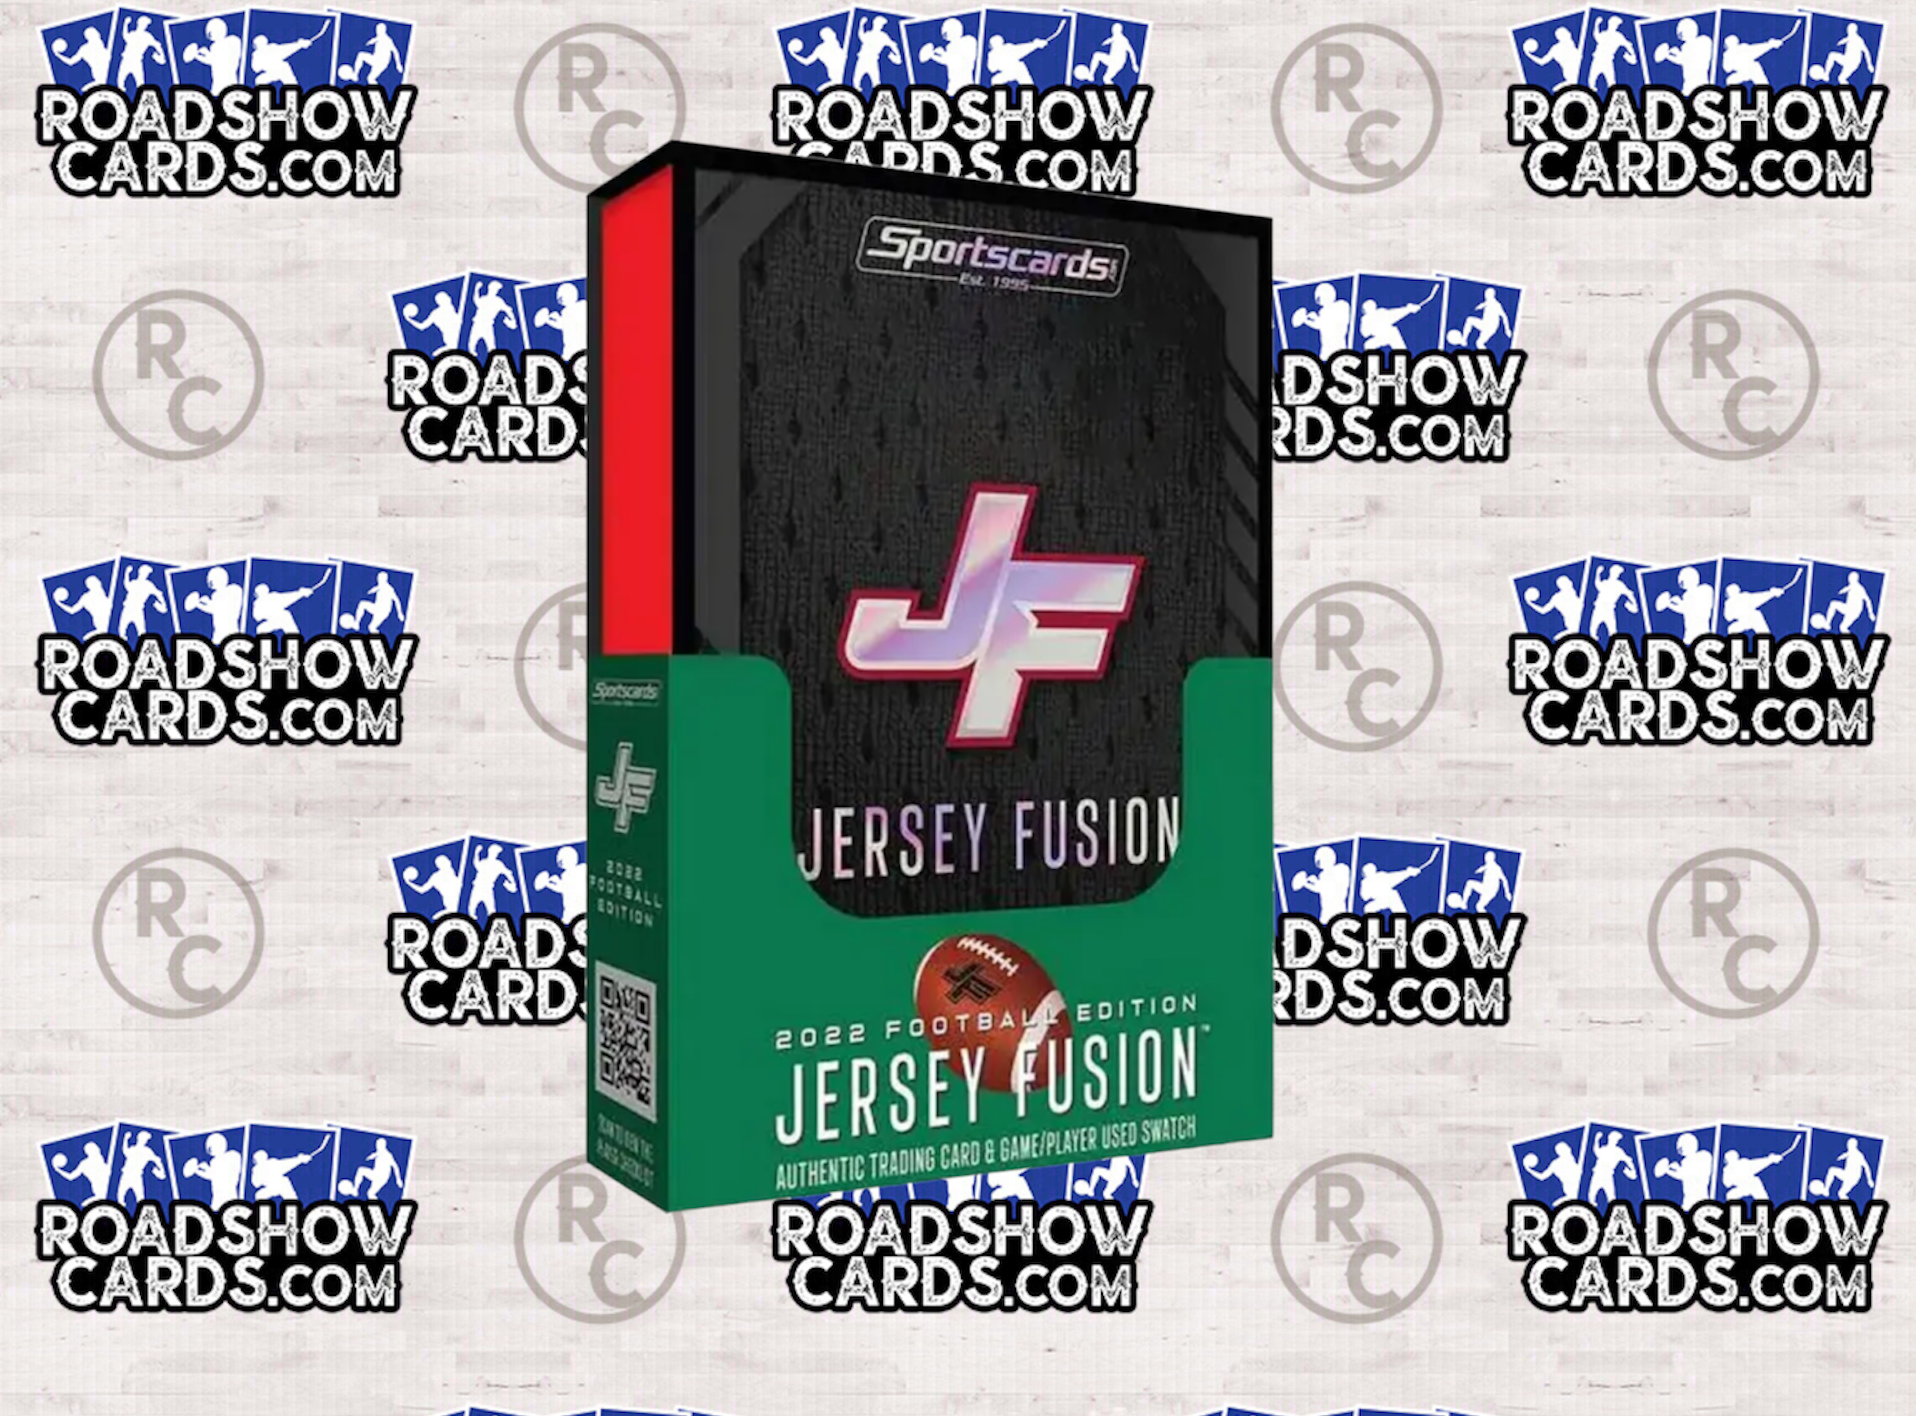 2022 Football Jersey Fusion Hobby Box